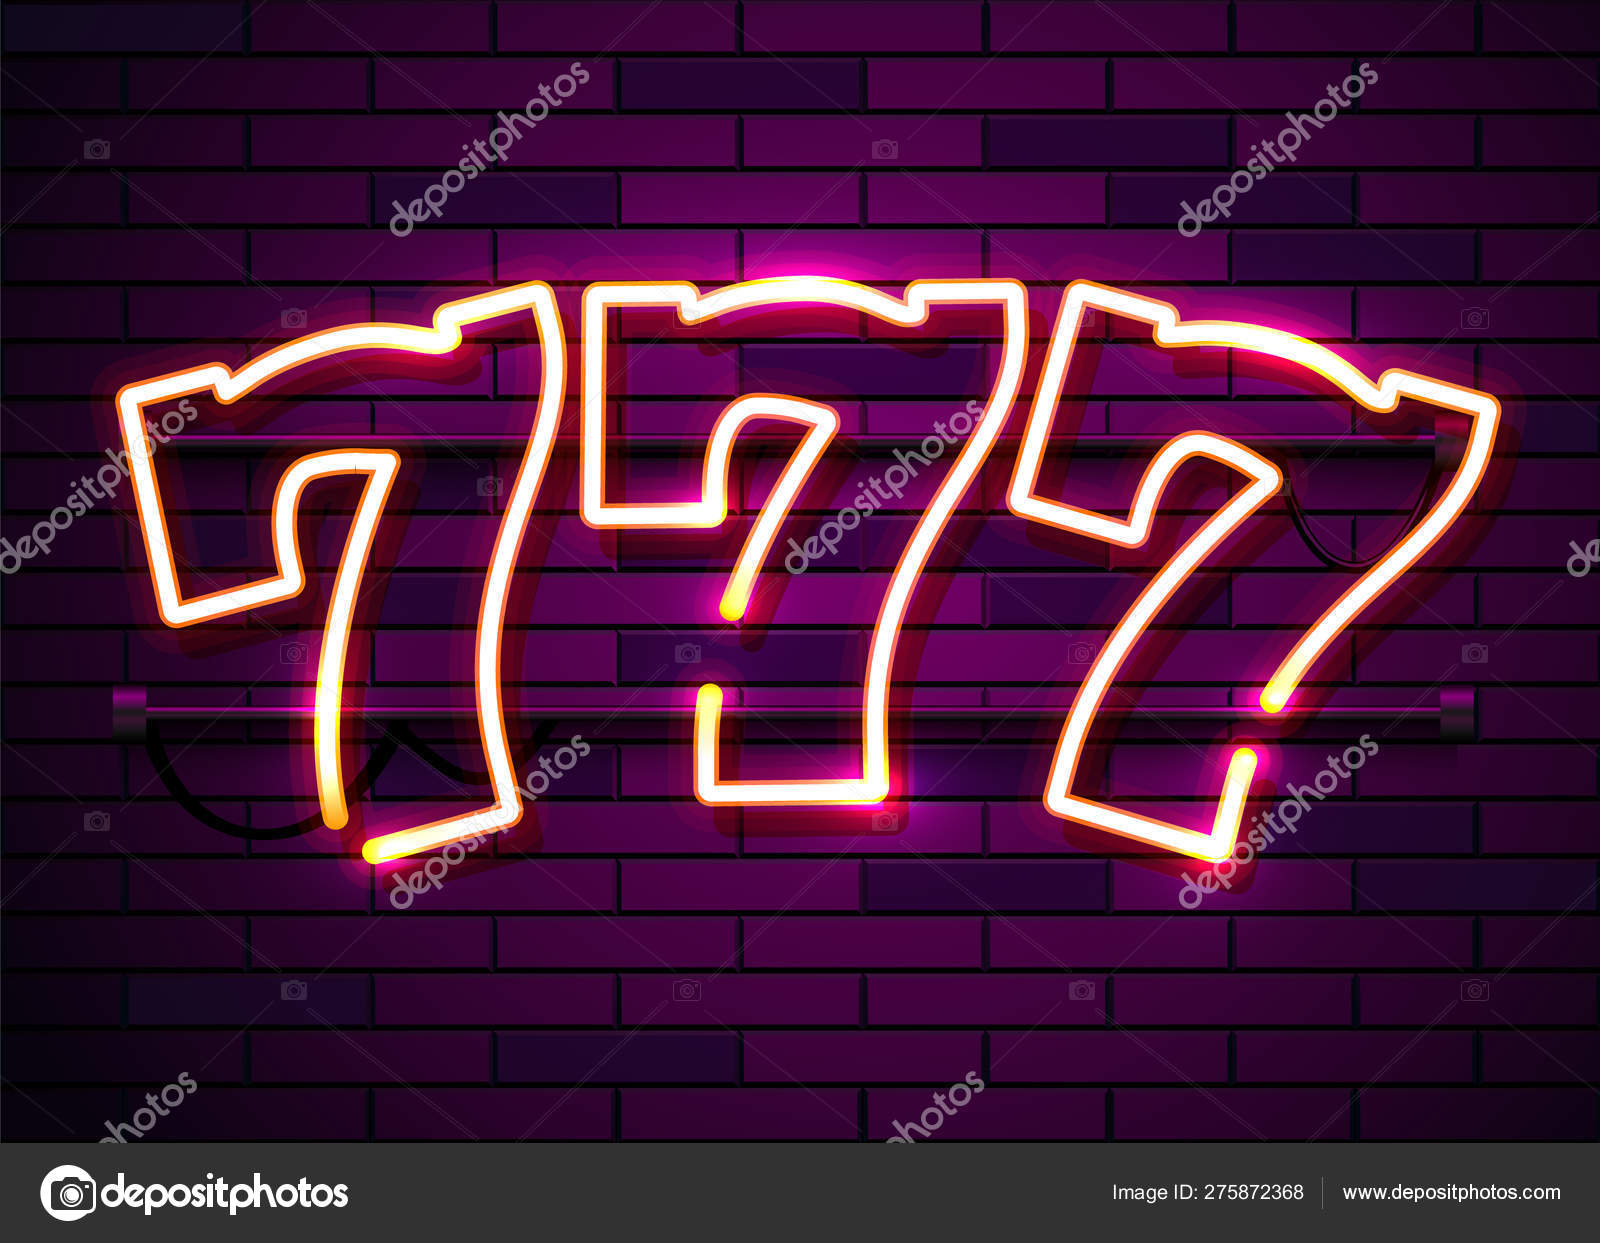 Neon 777 slots sign. Casino neon Online concept. Stock Vector Image by ©hobbit_art #275872368